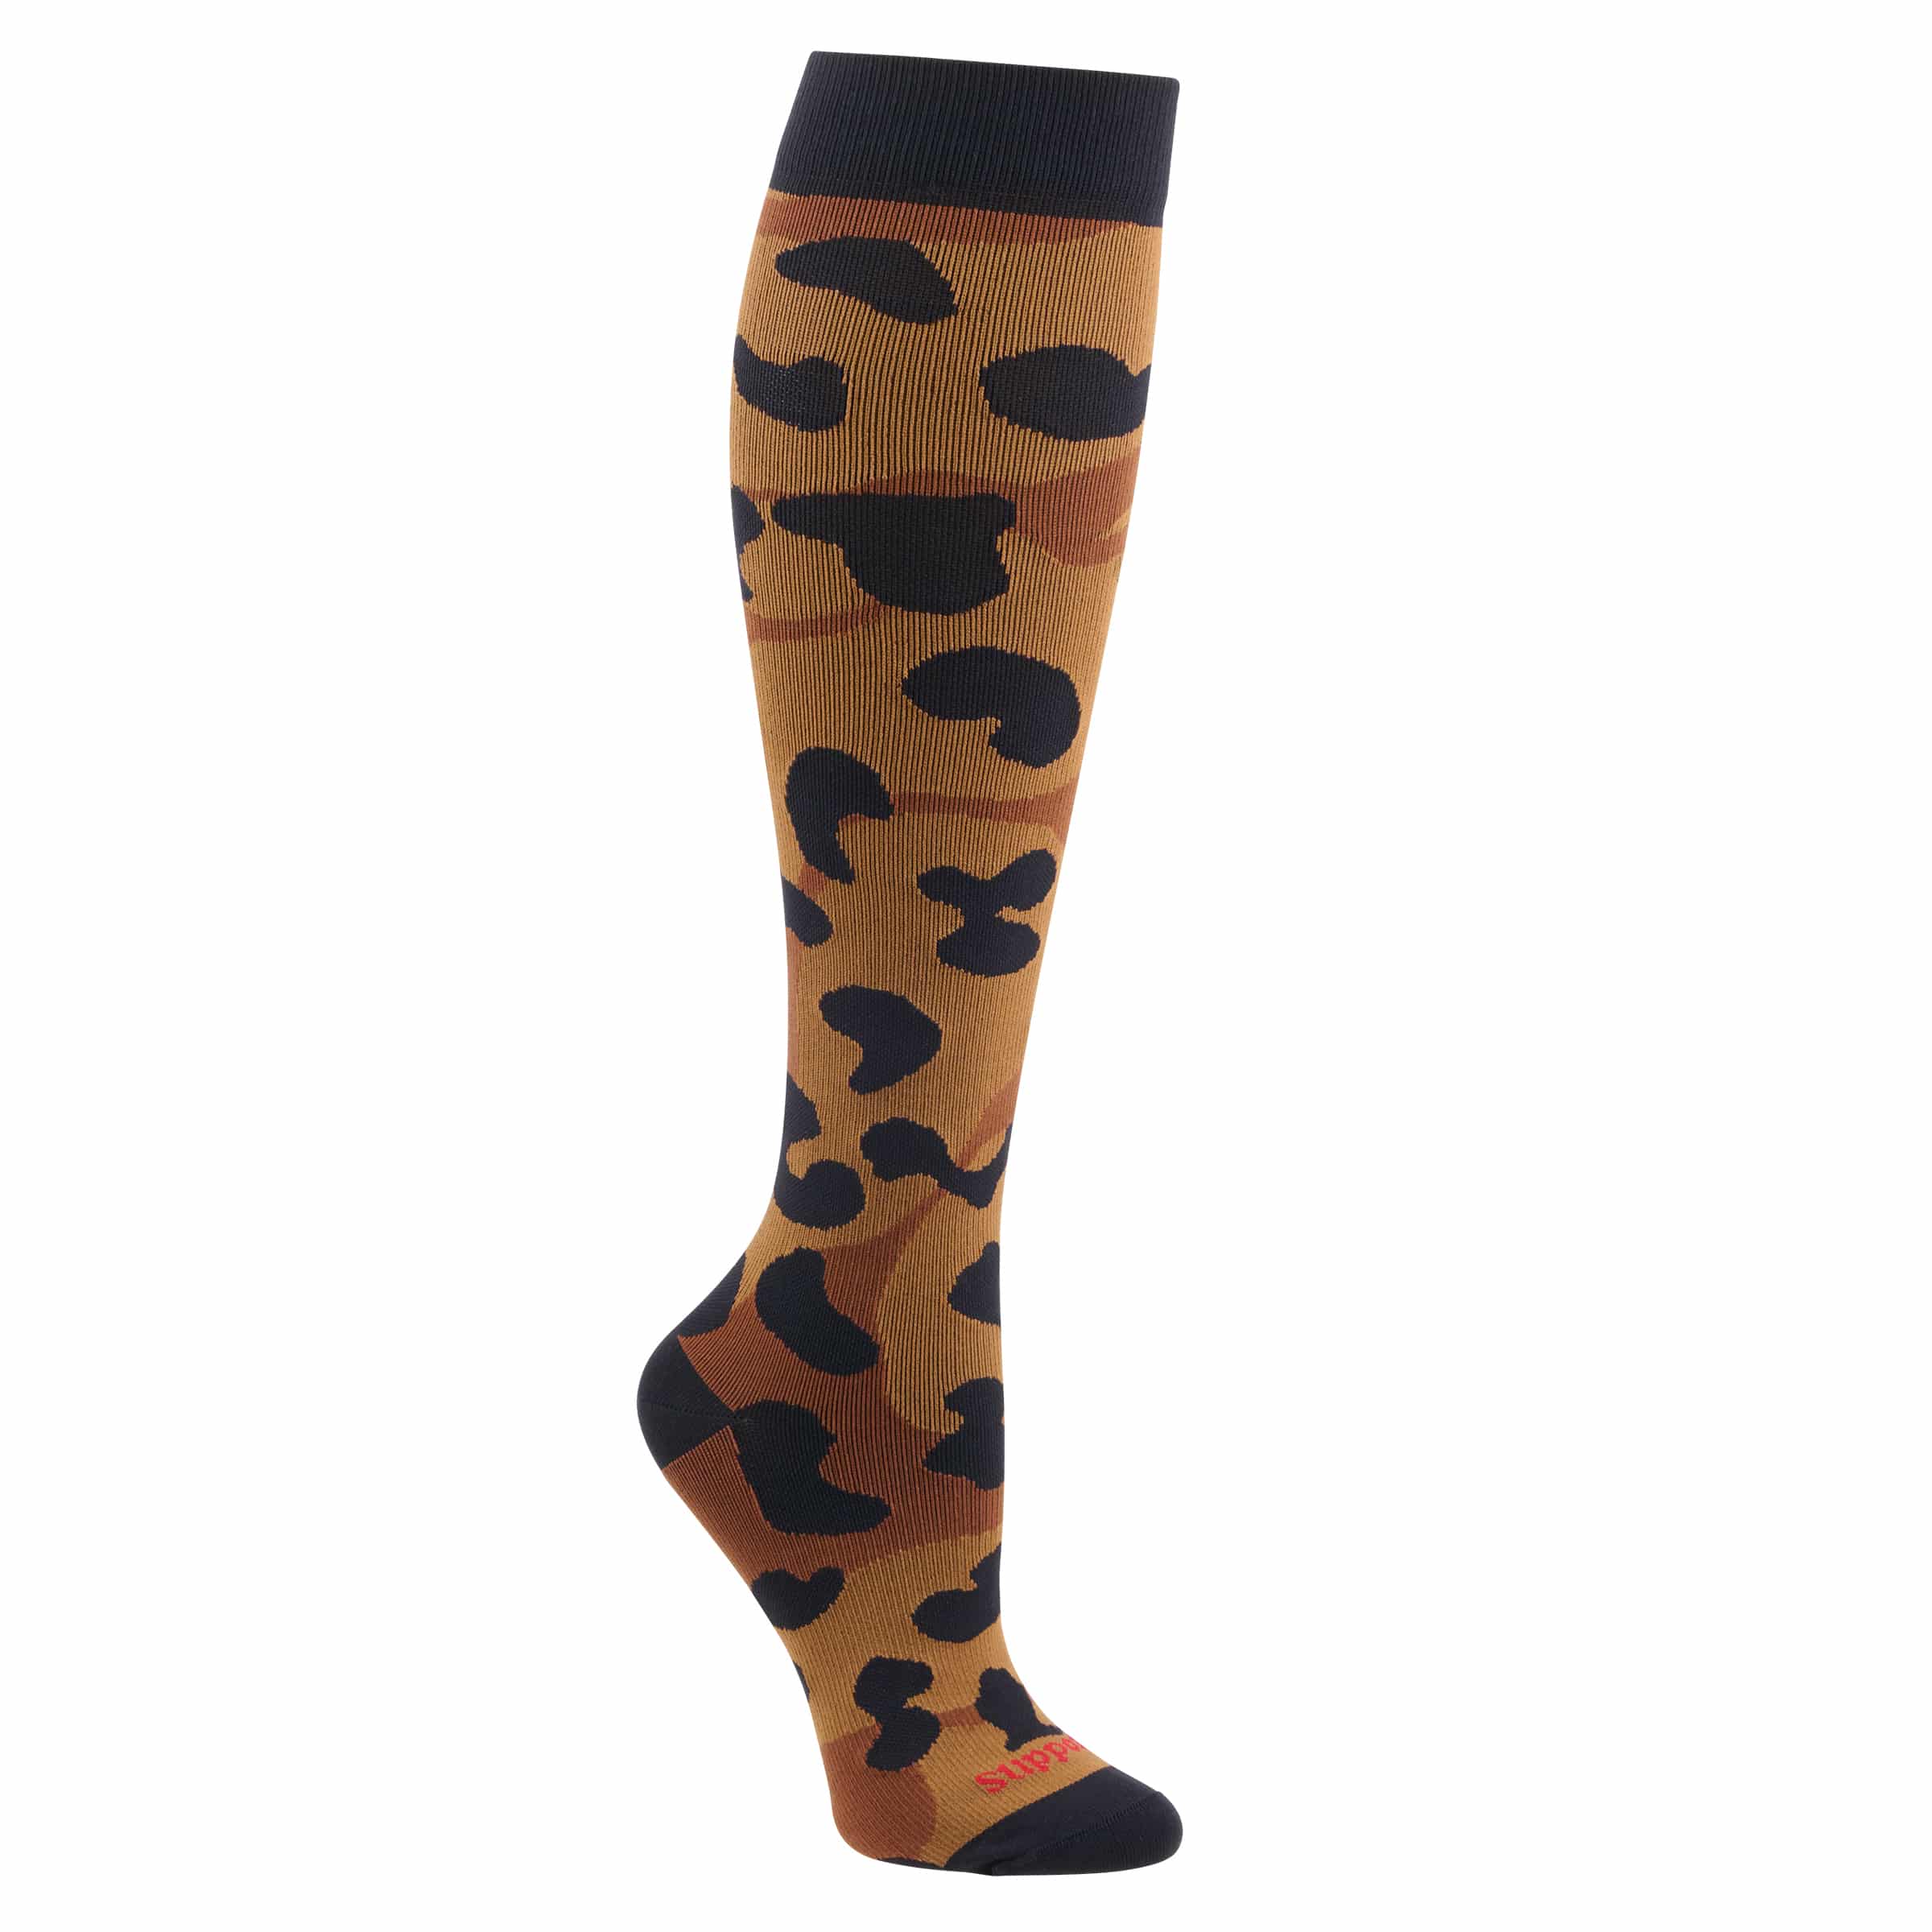 Supporo Unisex Leopard Compression Socks